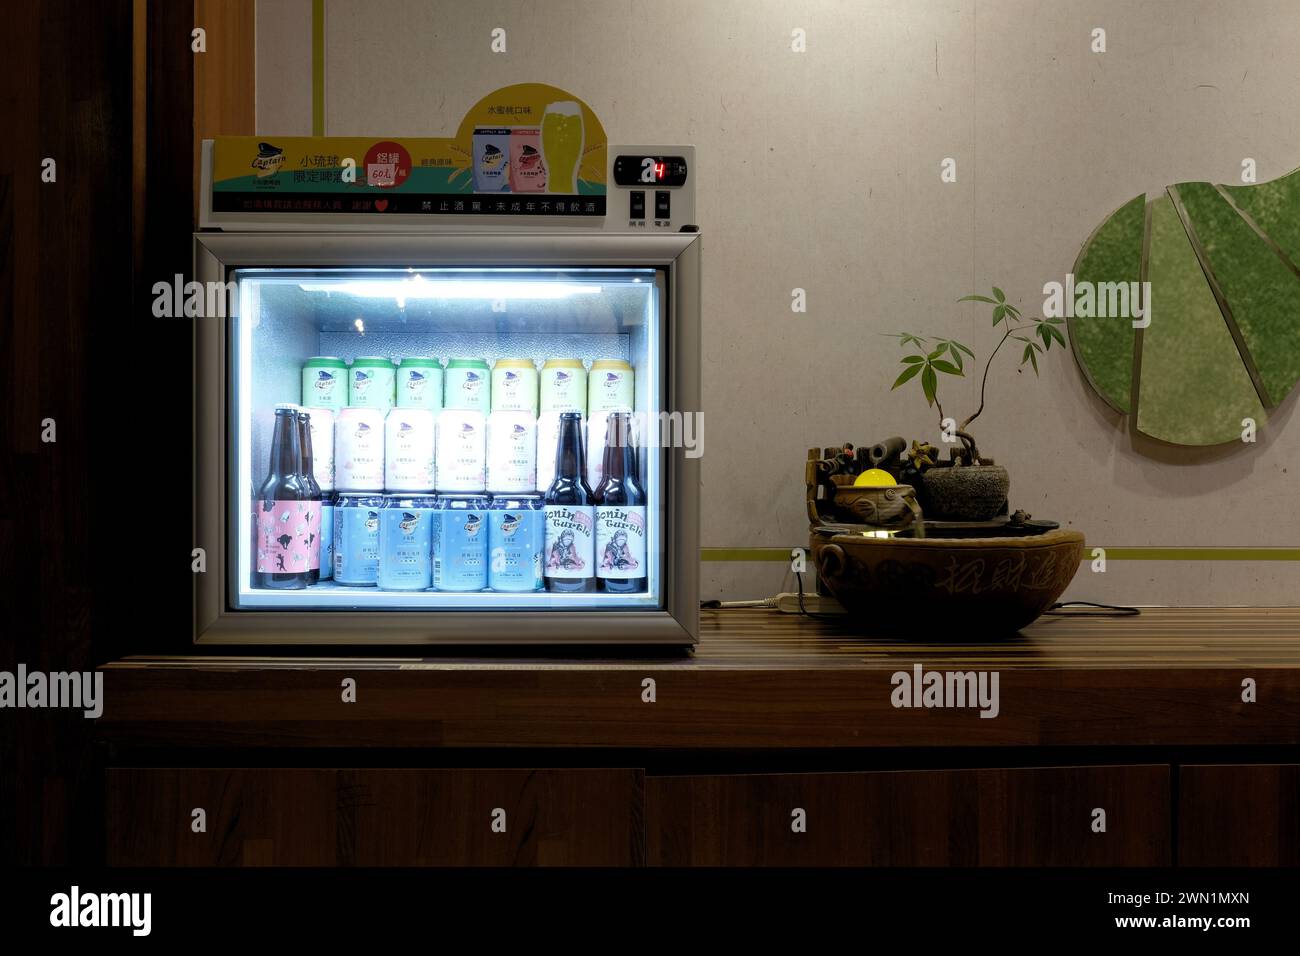 Verschiedene Dosen, Flaschen mit Captain Beer, gebraut in Taiwan, in einem kleinen Kühlschrank; hergestellt in Taiwan: Ronin-Schildkröte, Ohrenkatze; Liuqiu, Taiwan. Stockfoto